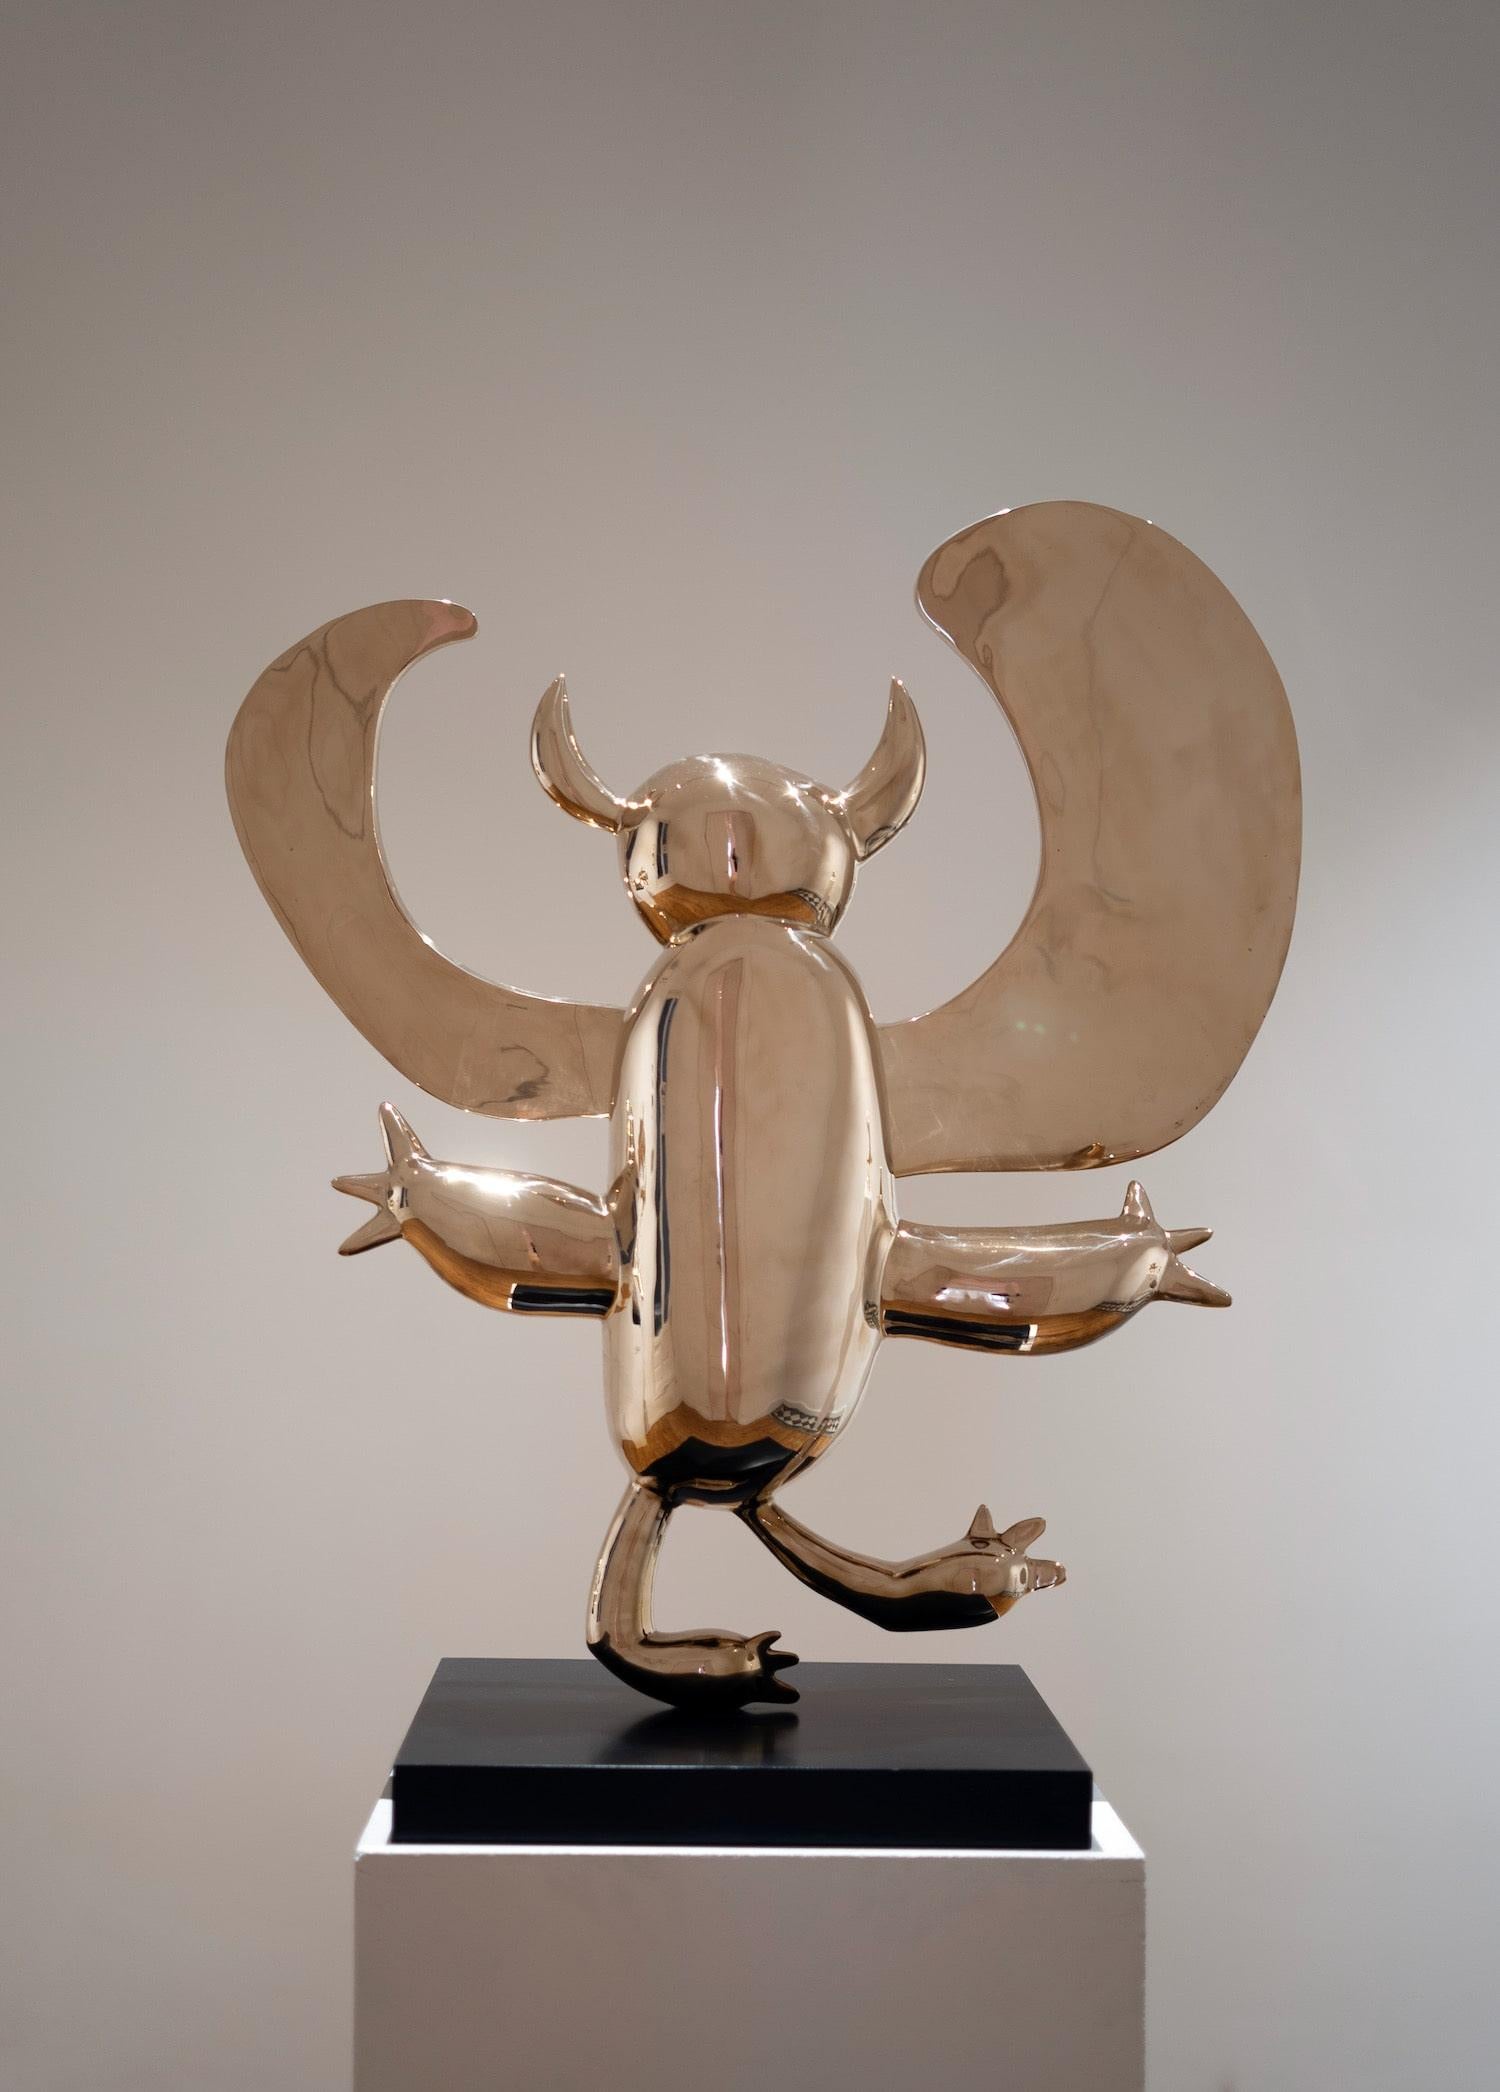 Le démon ailé est une sculpture en bronze poli de l'artiste contemporain Marcelo Martin Burgos, dont les dimensions sont 92 × 79 × 45 cm (36,2 × 31,1 × 17,7 in). 
La sculpture est signée et numérotée, elle fait partie d'une édition limitée à 12